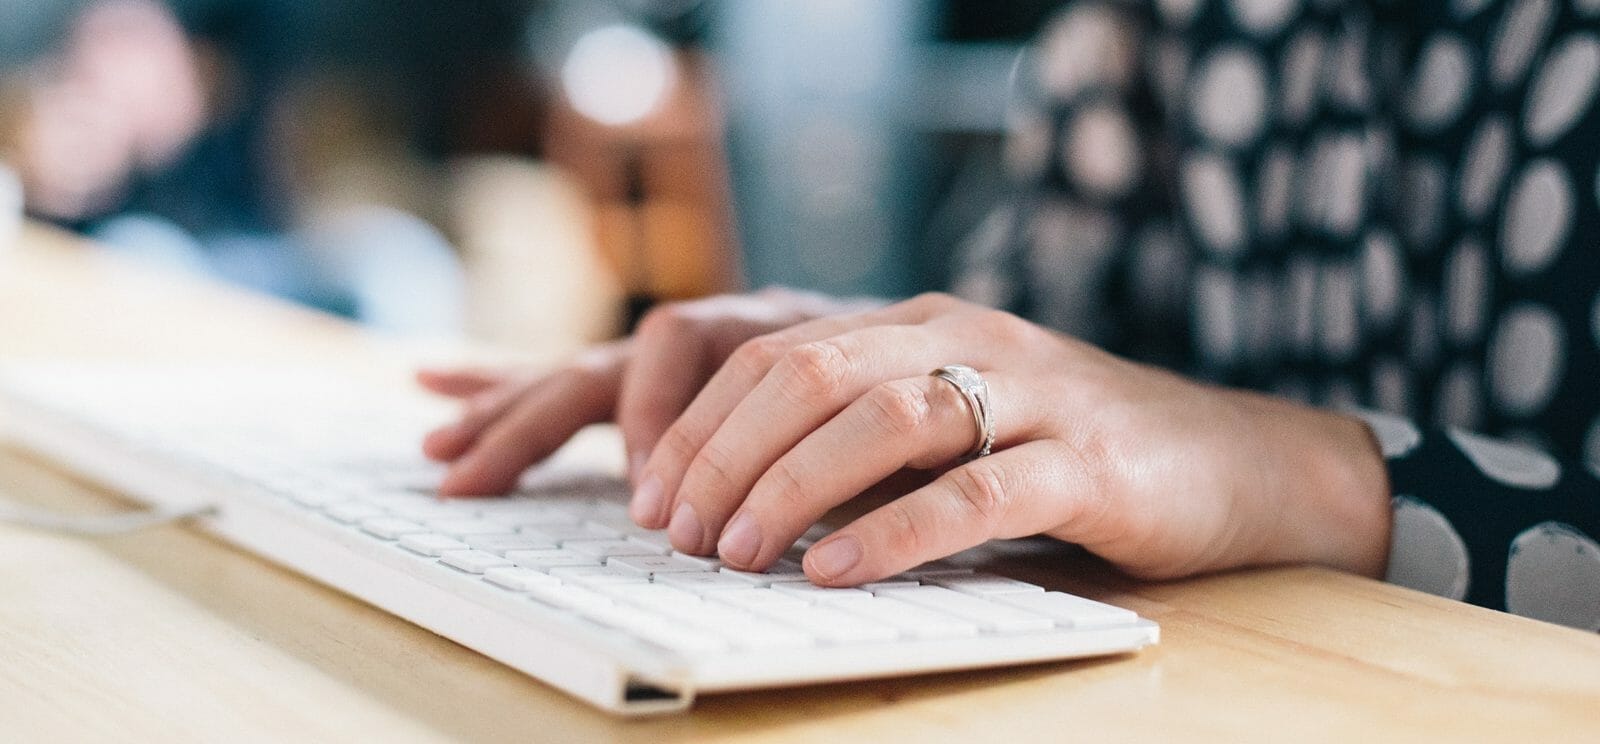 Een close-up van een persoon die op een toetsenbord typt tijdens het online leren.